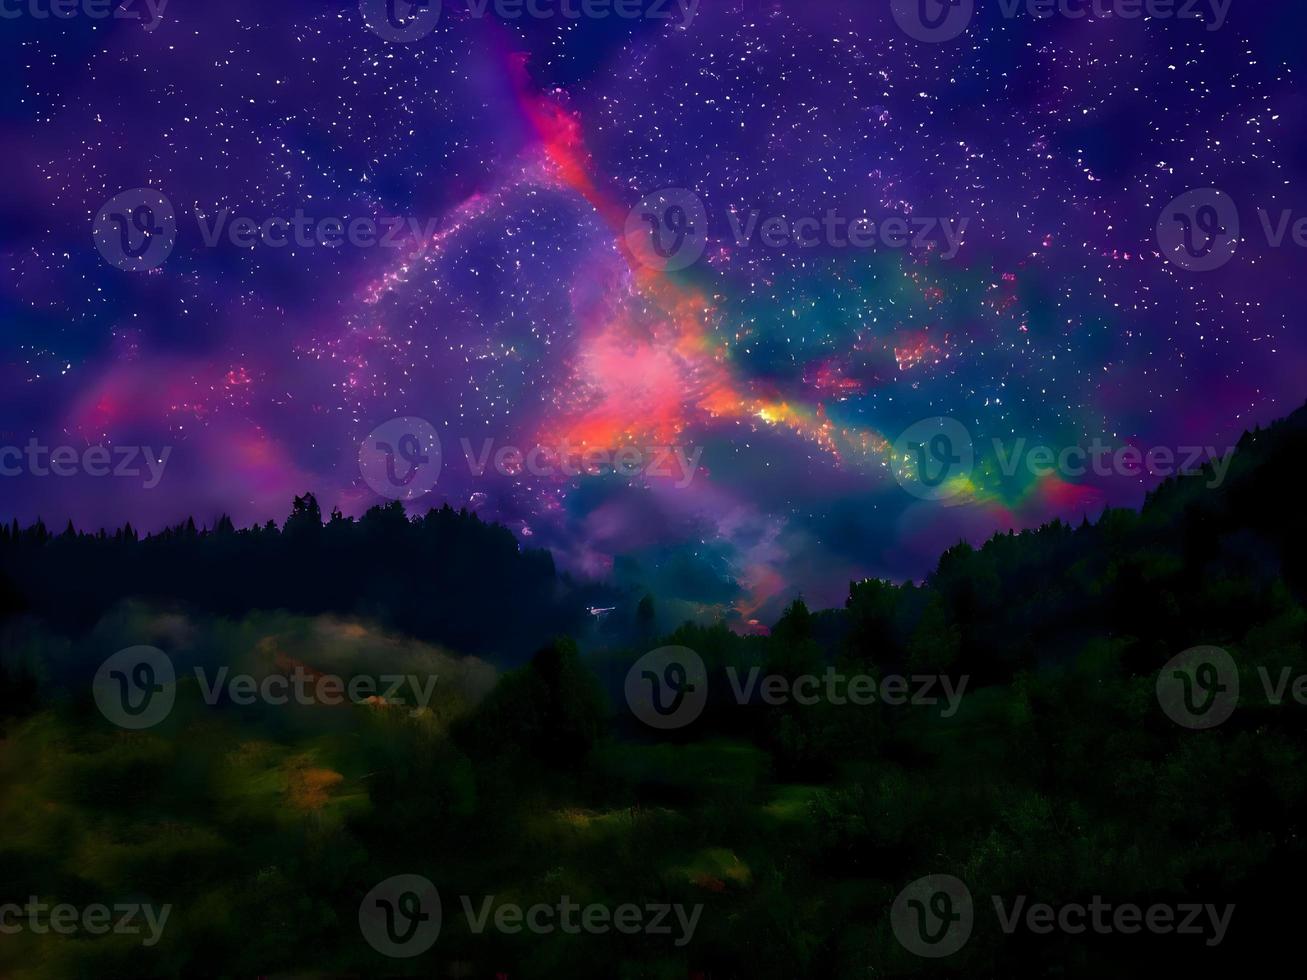 via lattea e luce rosa in montagna. paesaggio colorato notturno. cielo stellato con colline. bellissimo universo. sfondo dello spazio con la galassia. sfondo di viaggio foto